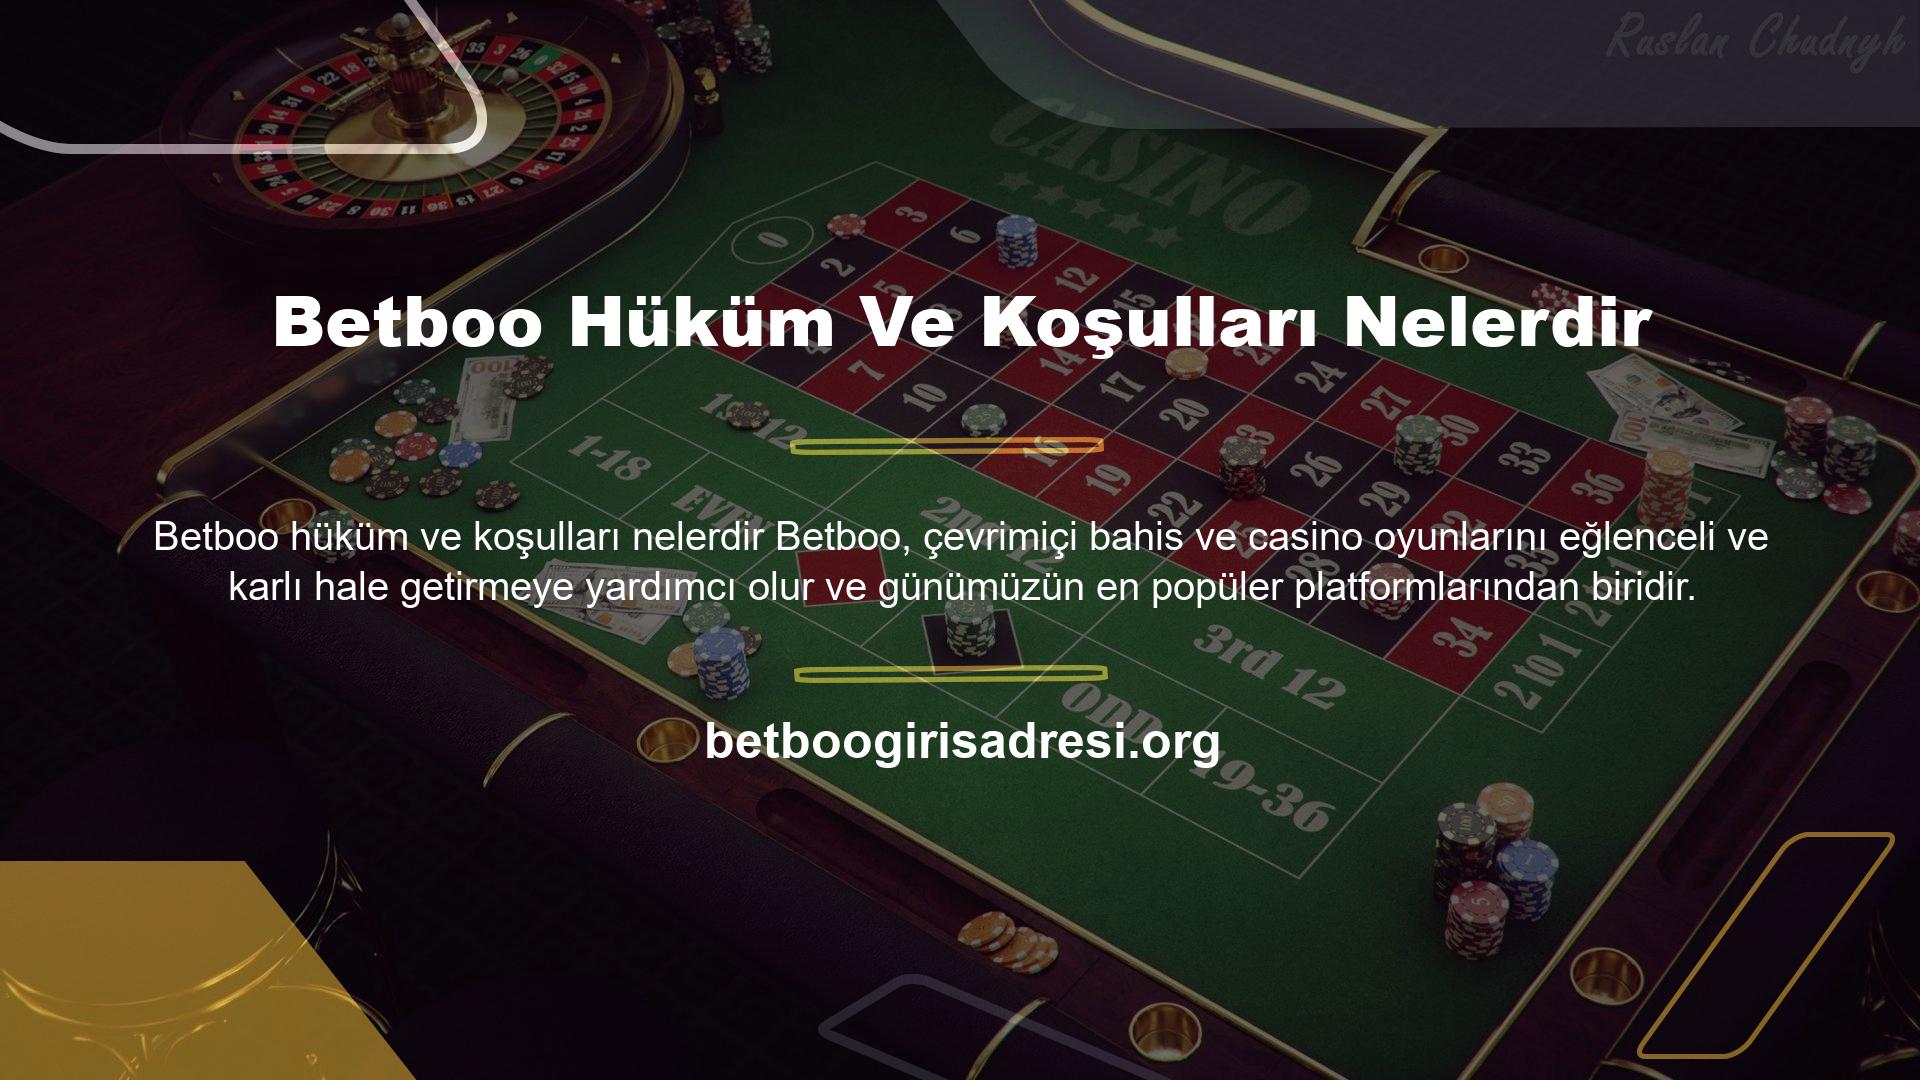 Bildiğiniz gibi Betboo, Türkiye dahil bazı ülkelerde yasa dışı bahis ve sanal casino hizmetleri sunmakta ve diğer platformlardan farklı olarak ortak kurallarla güvenilirlik sunmaktadır